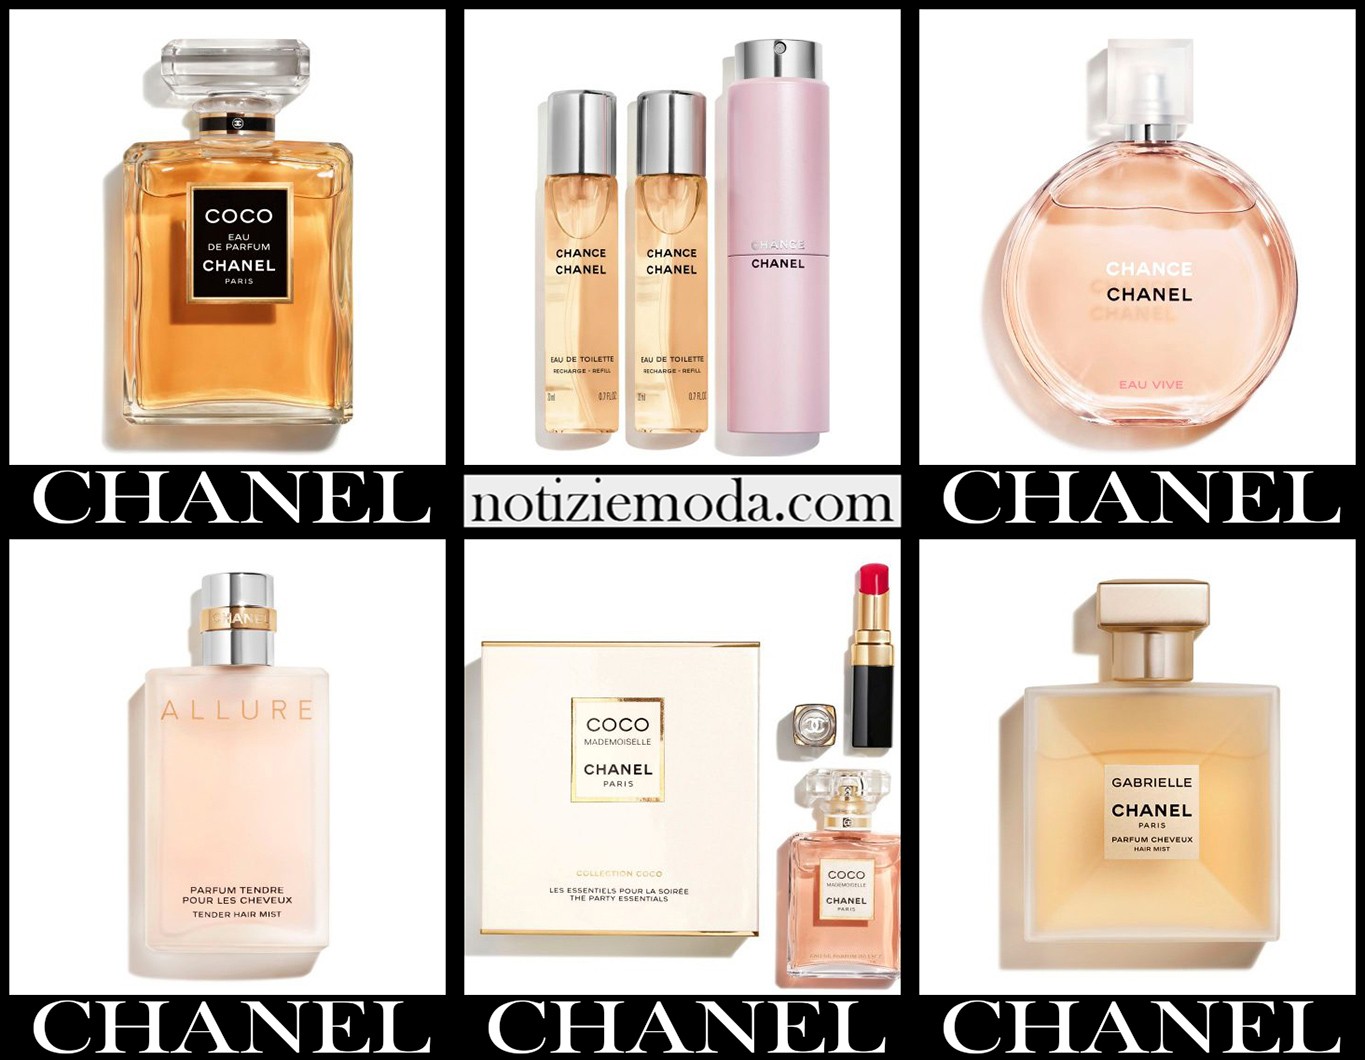 Nuovi arrivi profumi Chanel 2021 idee regalo donna